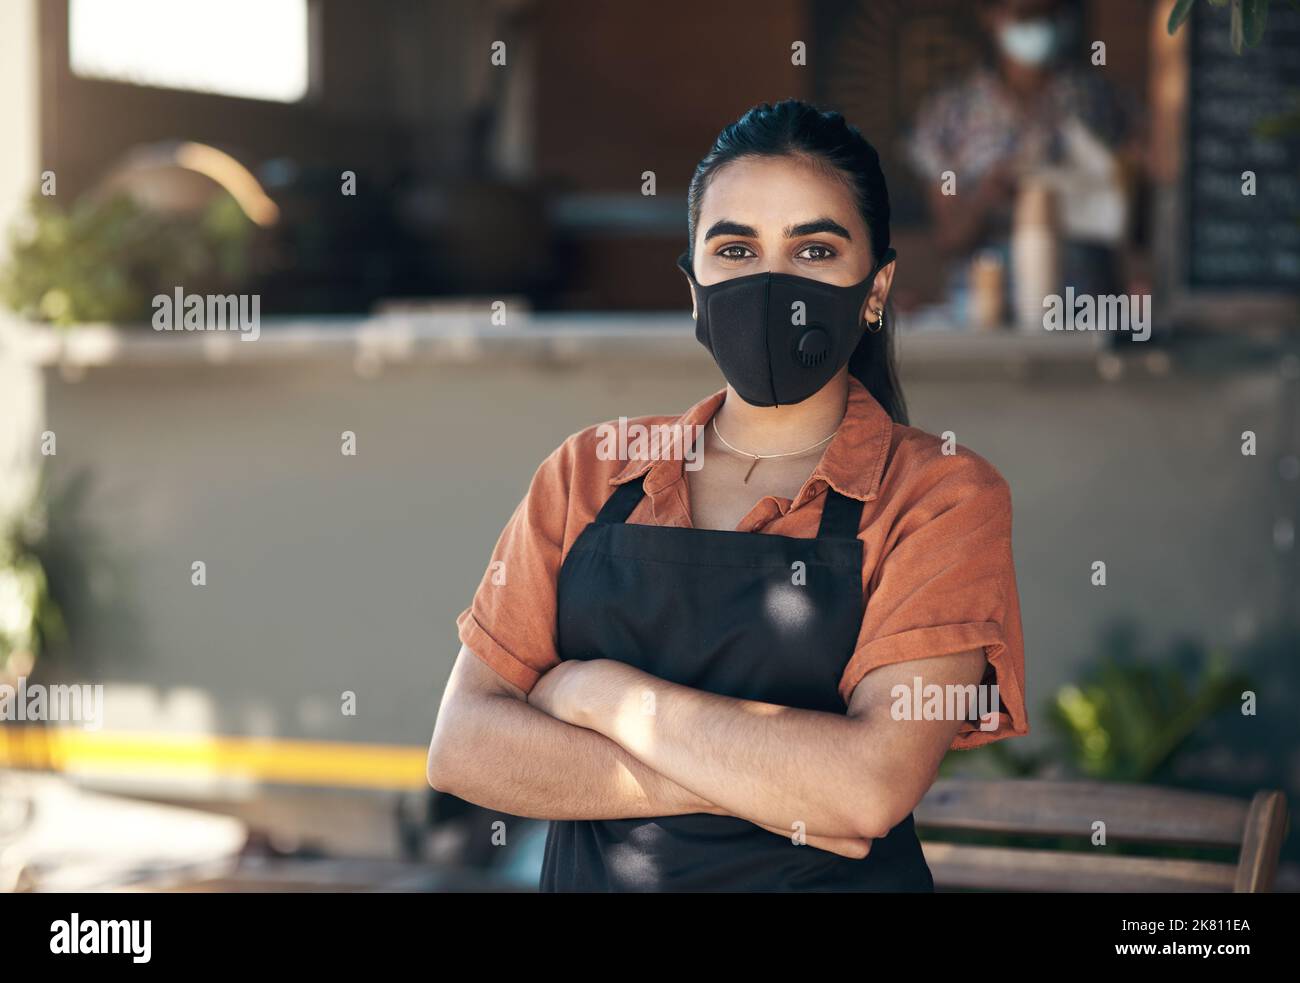 Covid-Regeln folgend. Eine junge Frau, die mit gefalteten Armen vor ihrem Restaurant steht und eine Gesichtsmaske trägt. Stockfoto